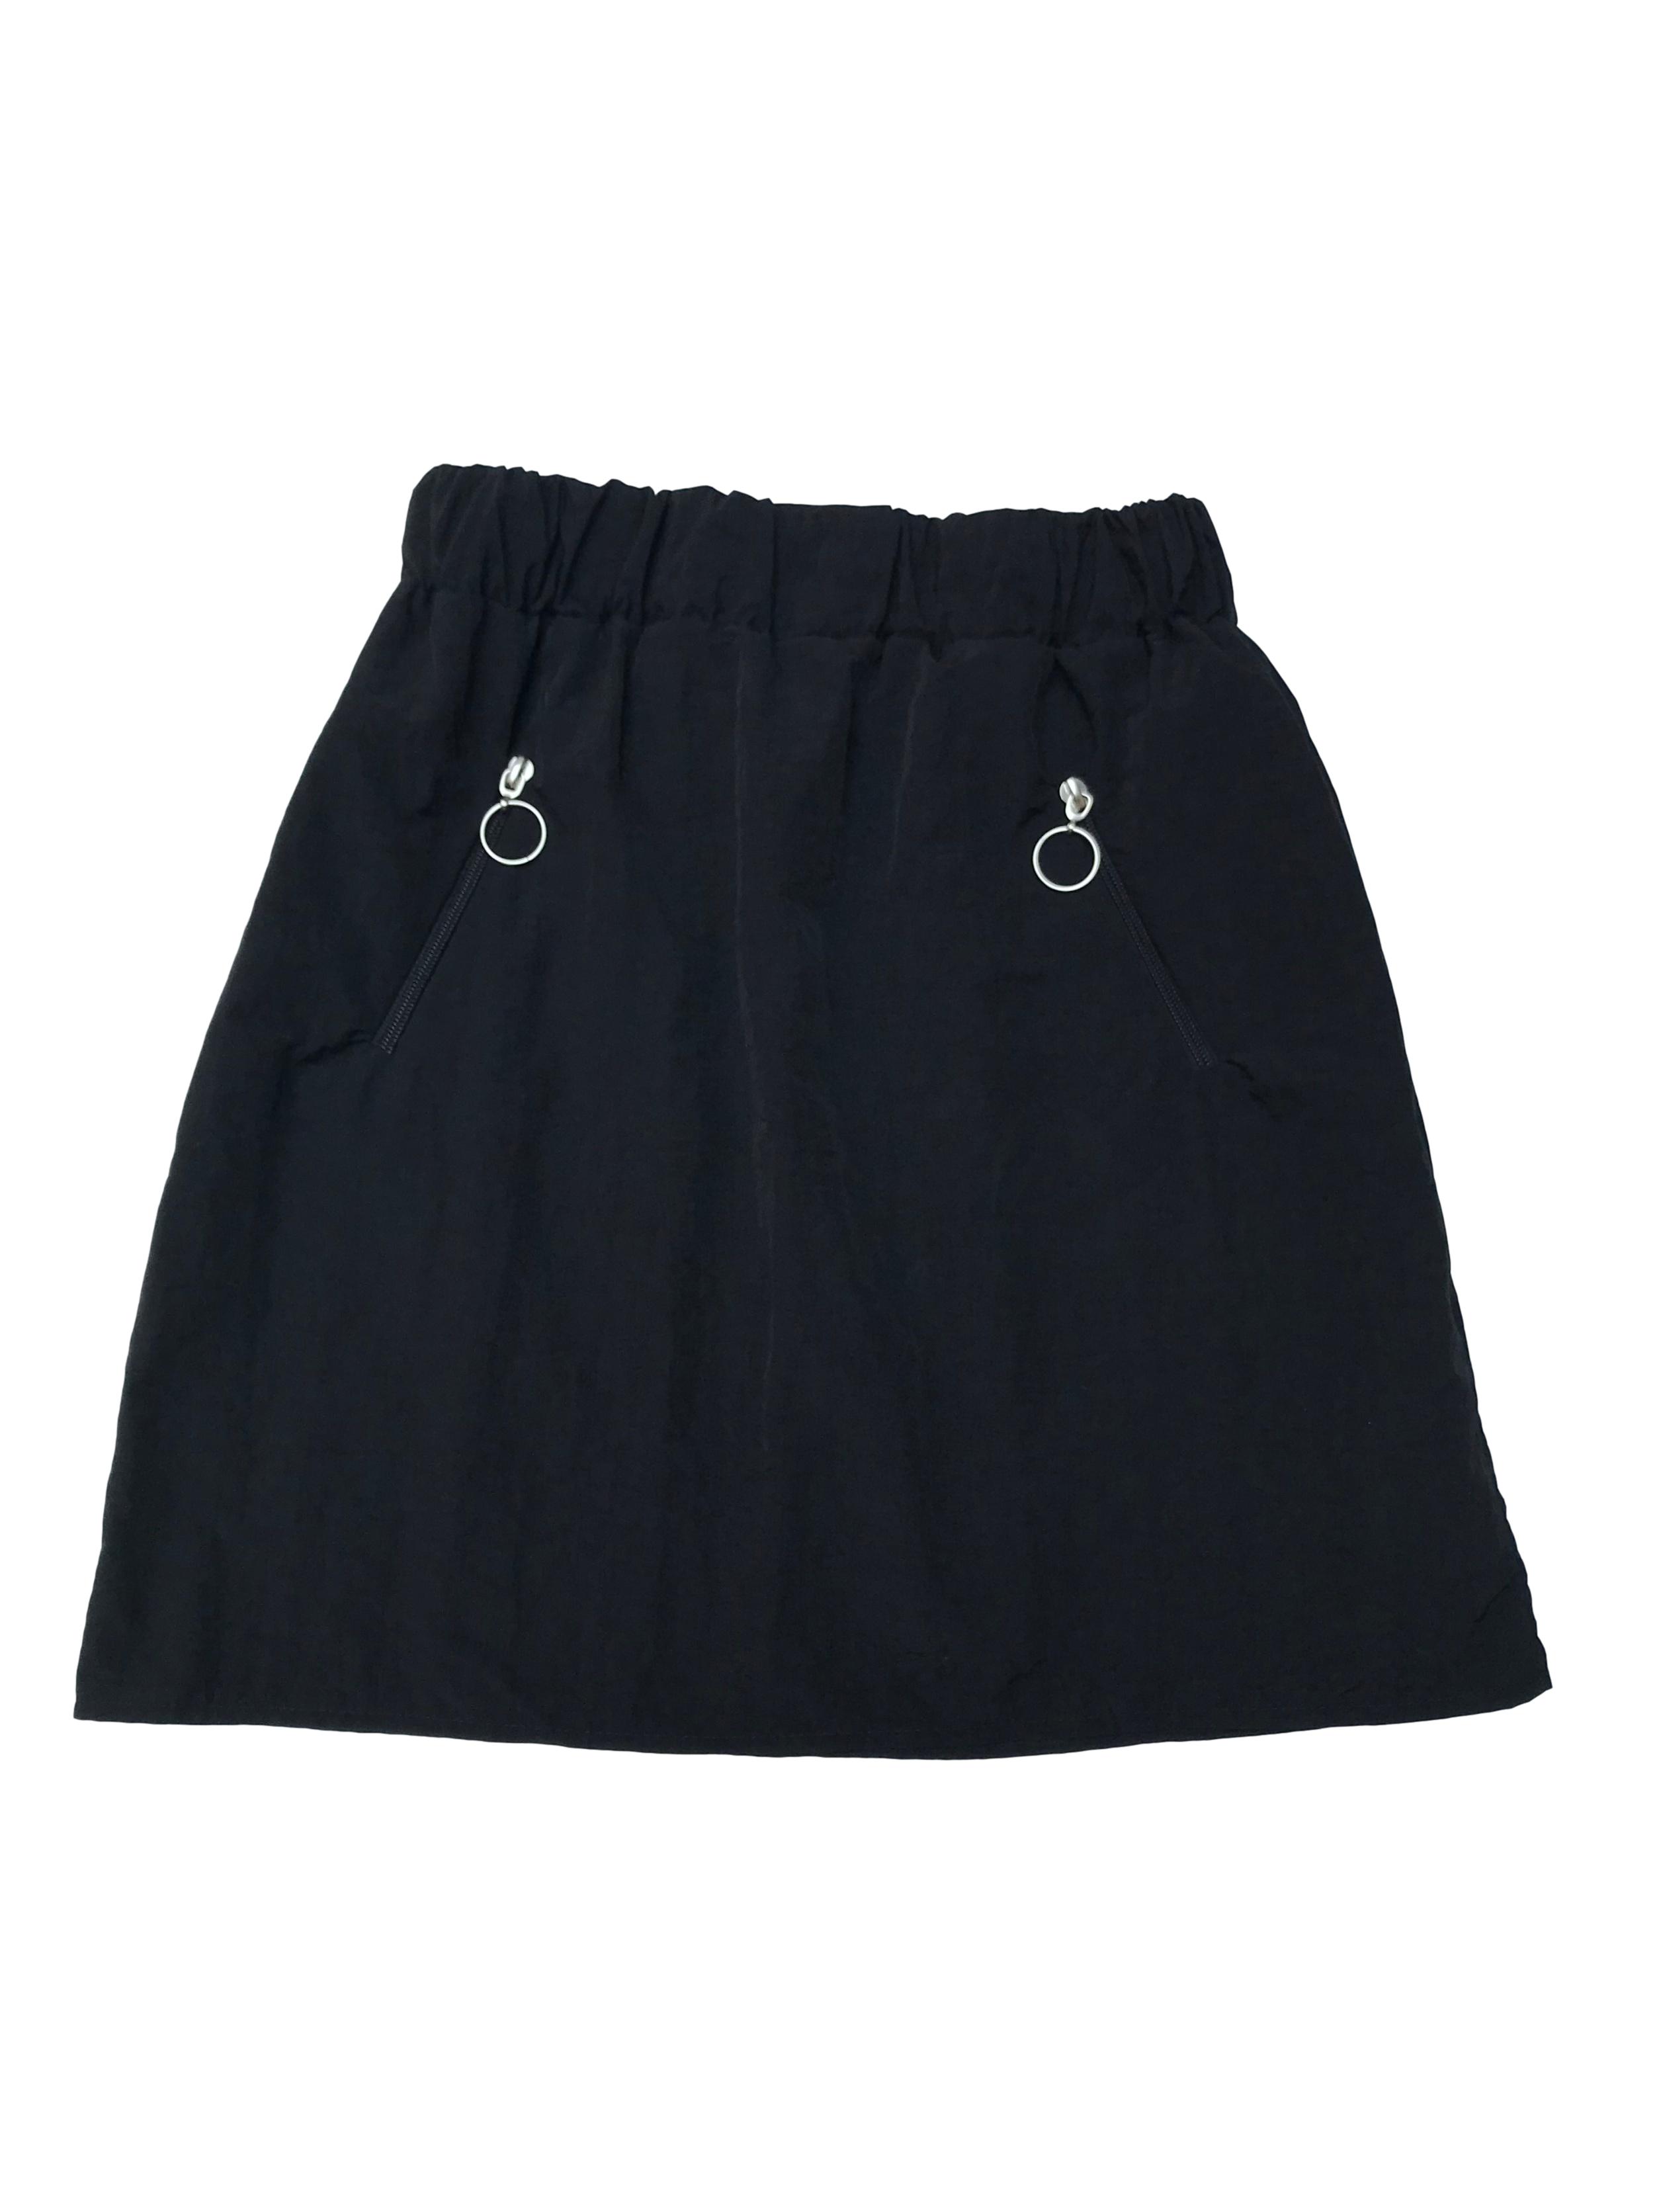 Falda negra de tela tipo taslán suave, con cierres laterales y pretina elástica. Largo 45cm. Nunca usada